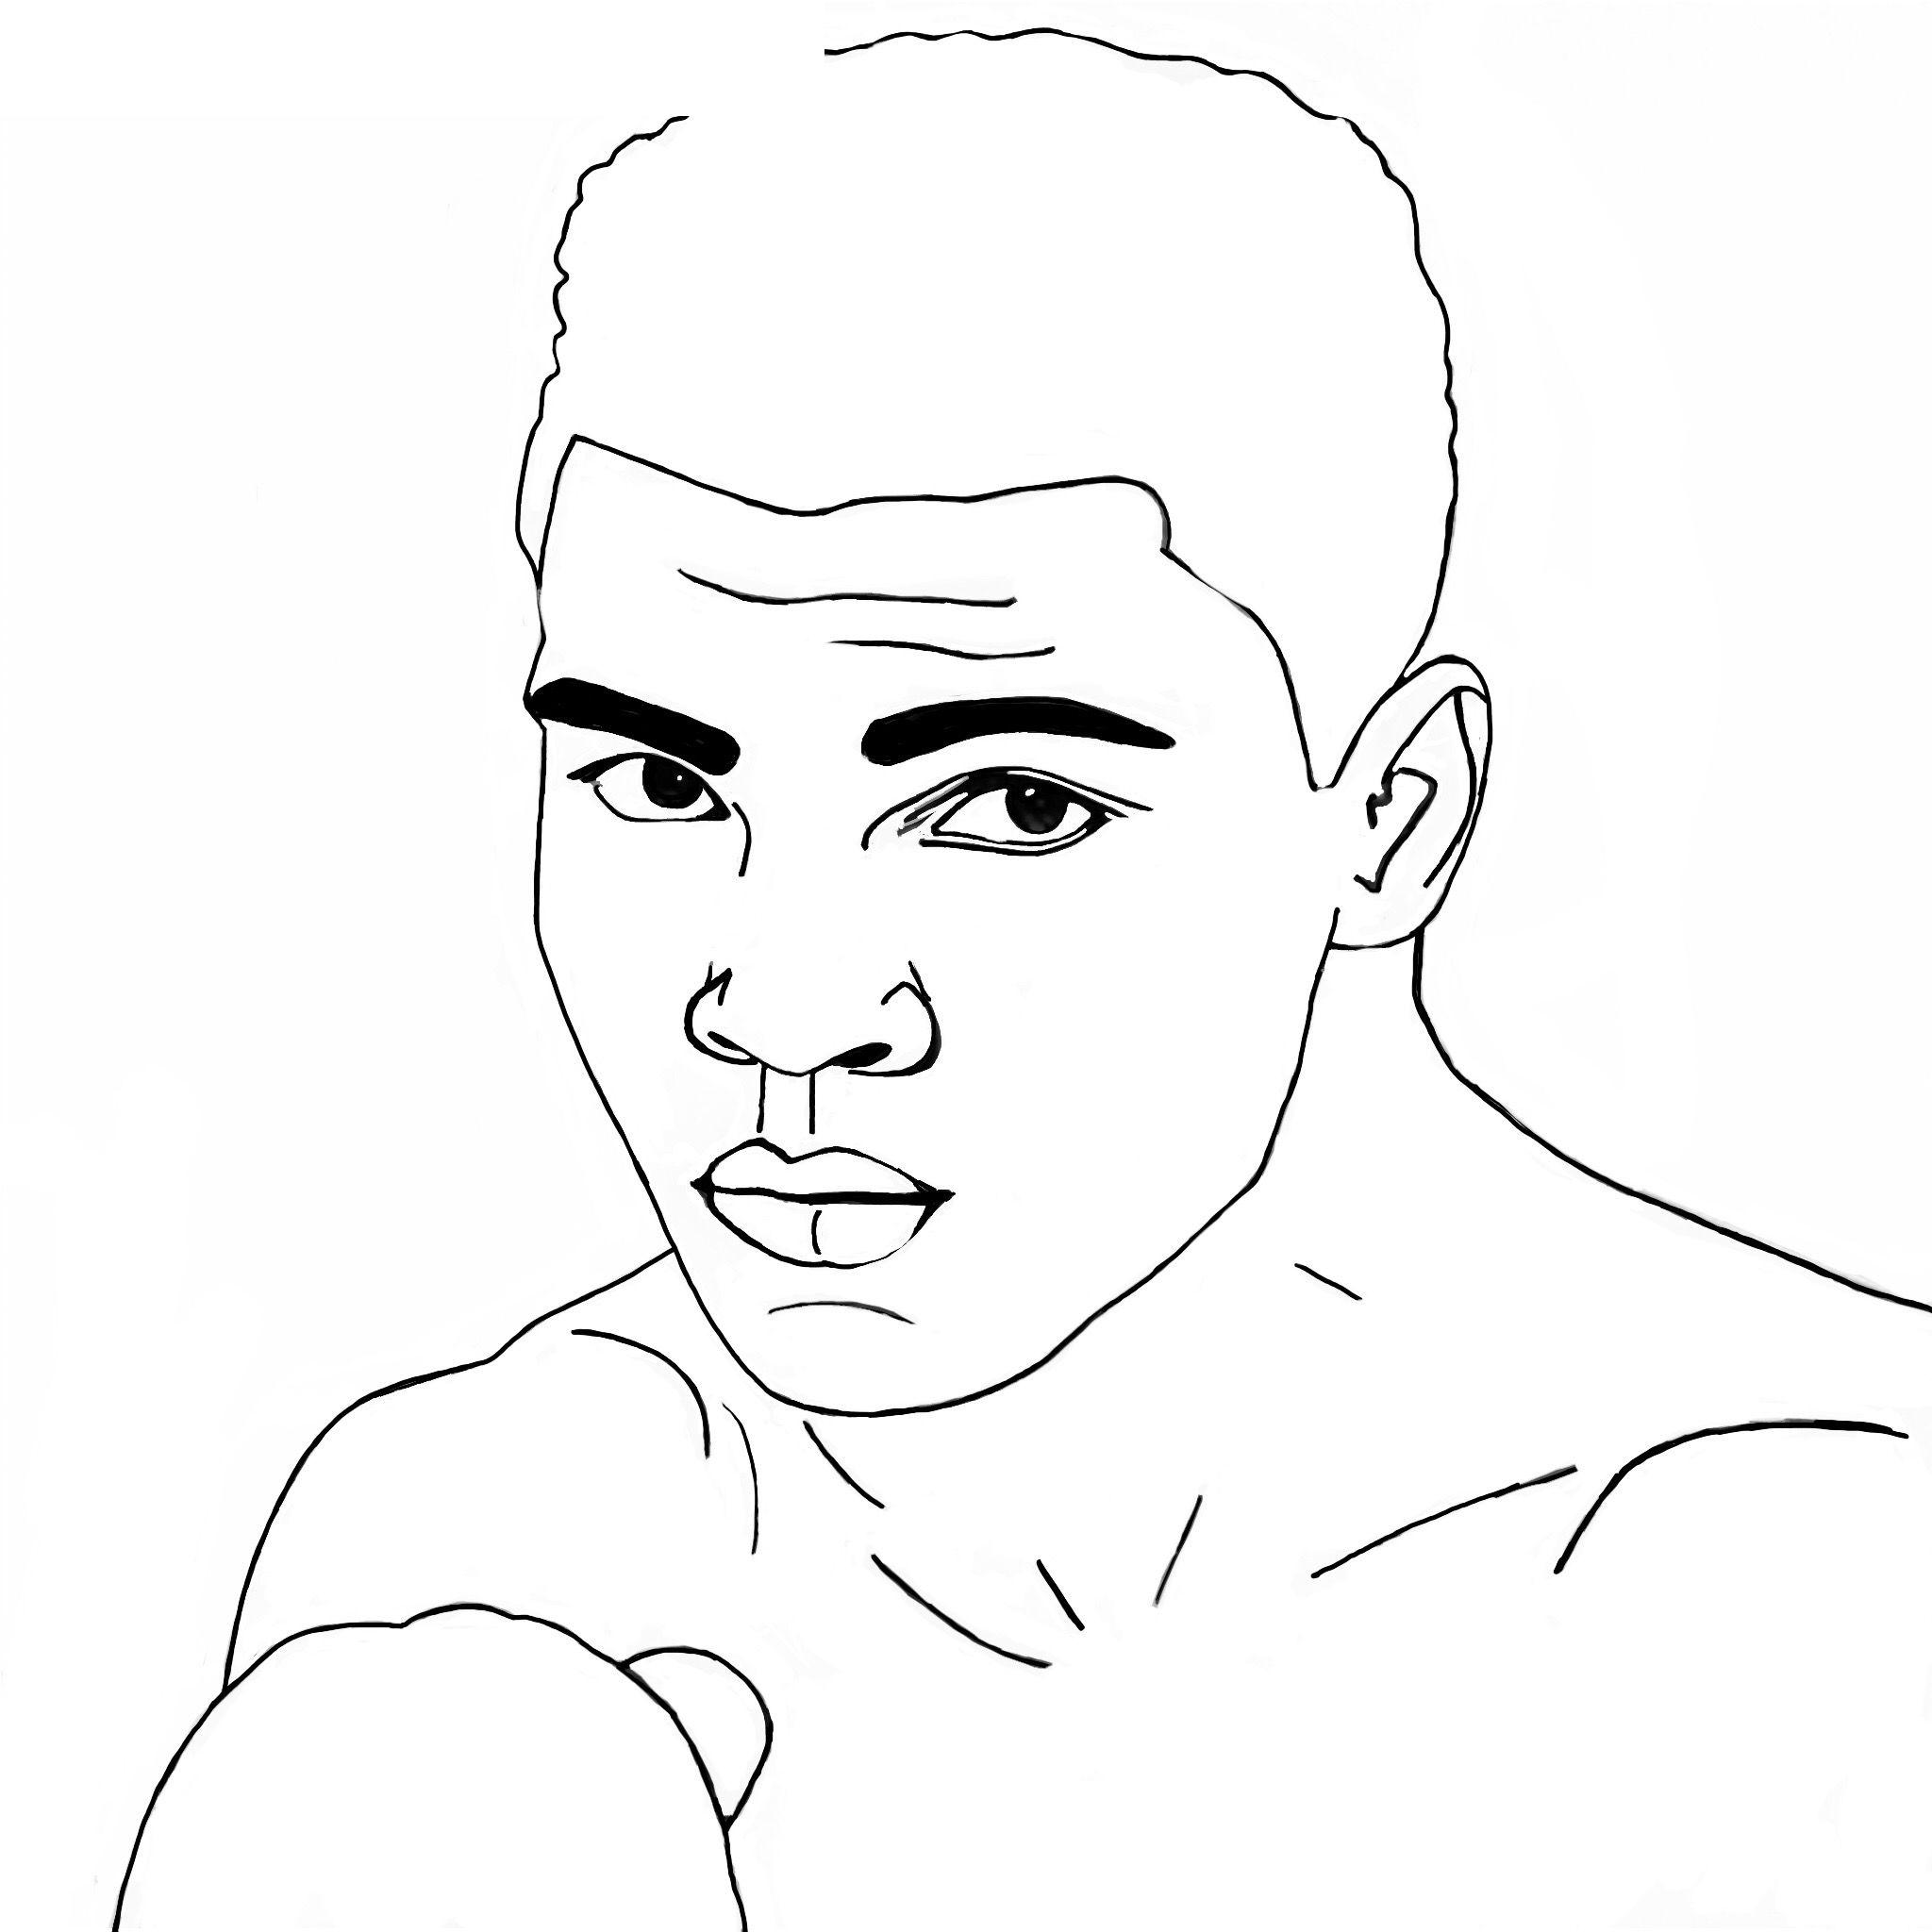 Wéi e Portrait vum Muhammad Ali ze zéien